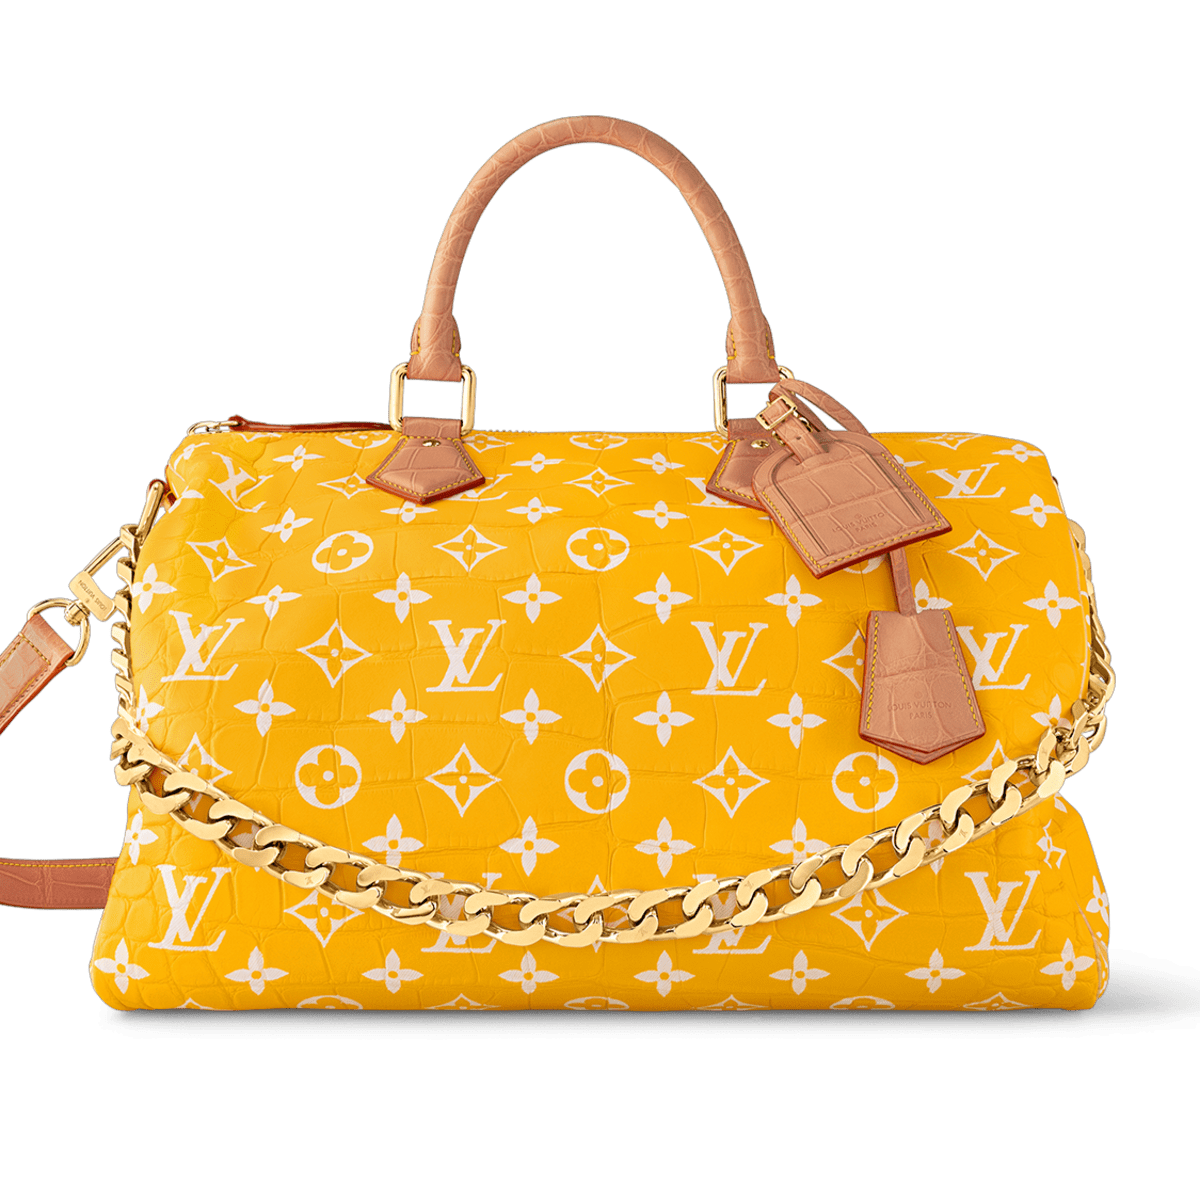 The Louis Vuitton Millionaire Speedy 40 handbag from Pharrell's